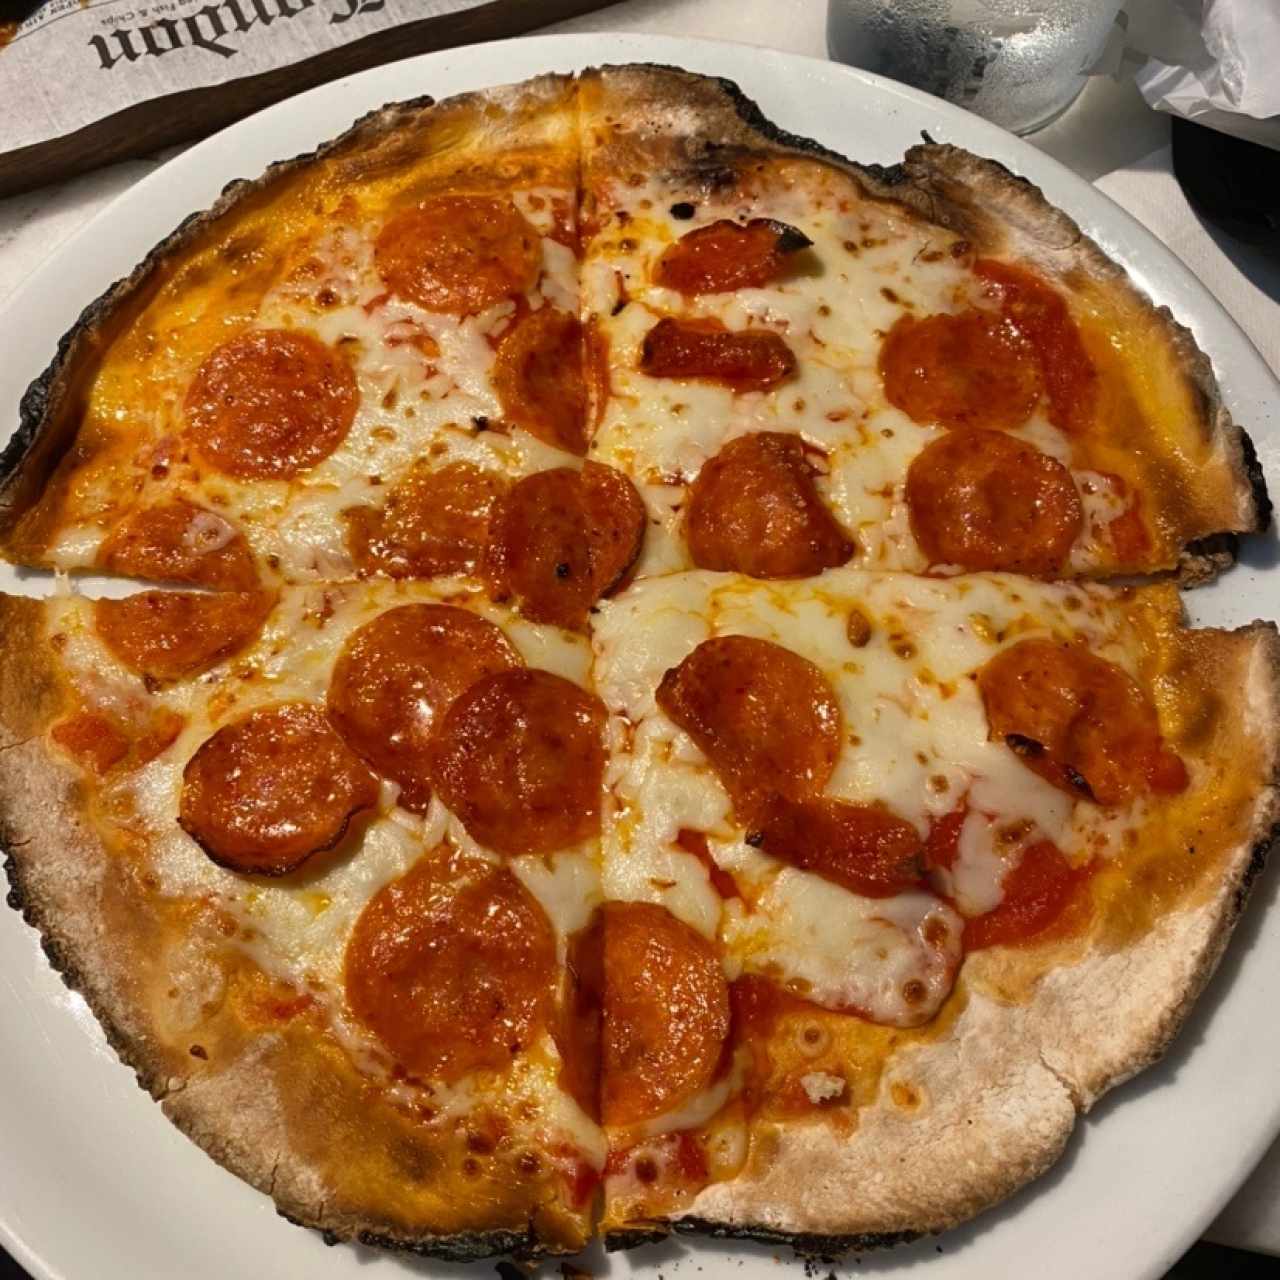 Pizze Rosse - Full Pepperoni